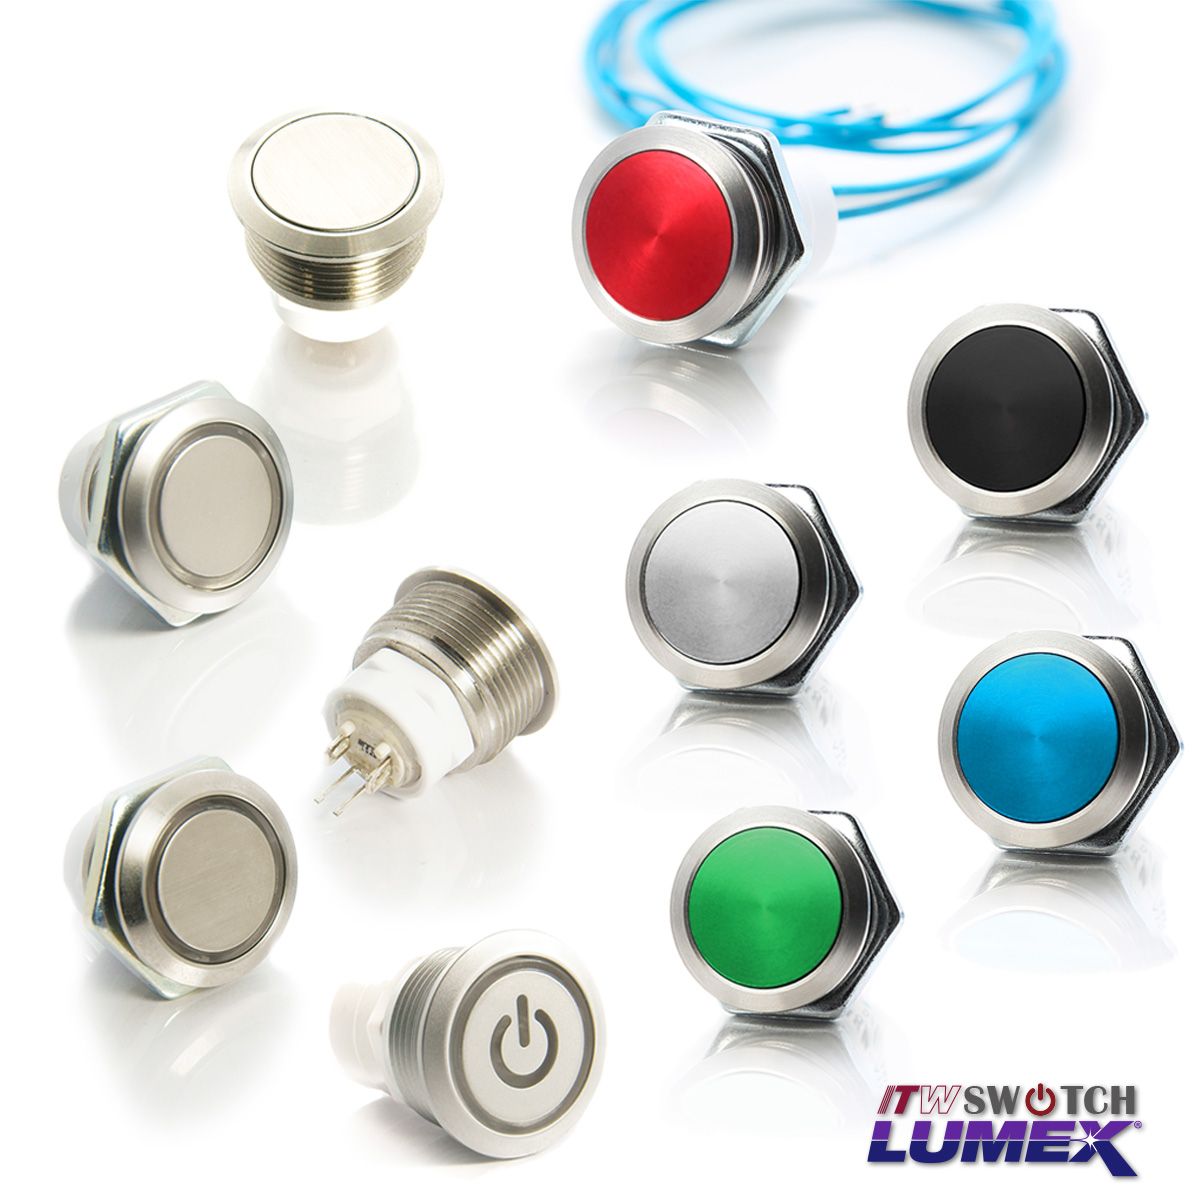 ITW Lumex Switchпредлагает кнопочные переключатели с различными вариантами дизайна, каждый из которых имеет вырез в панели толщиной 19 мм.